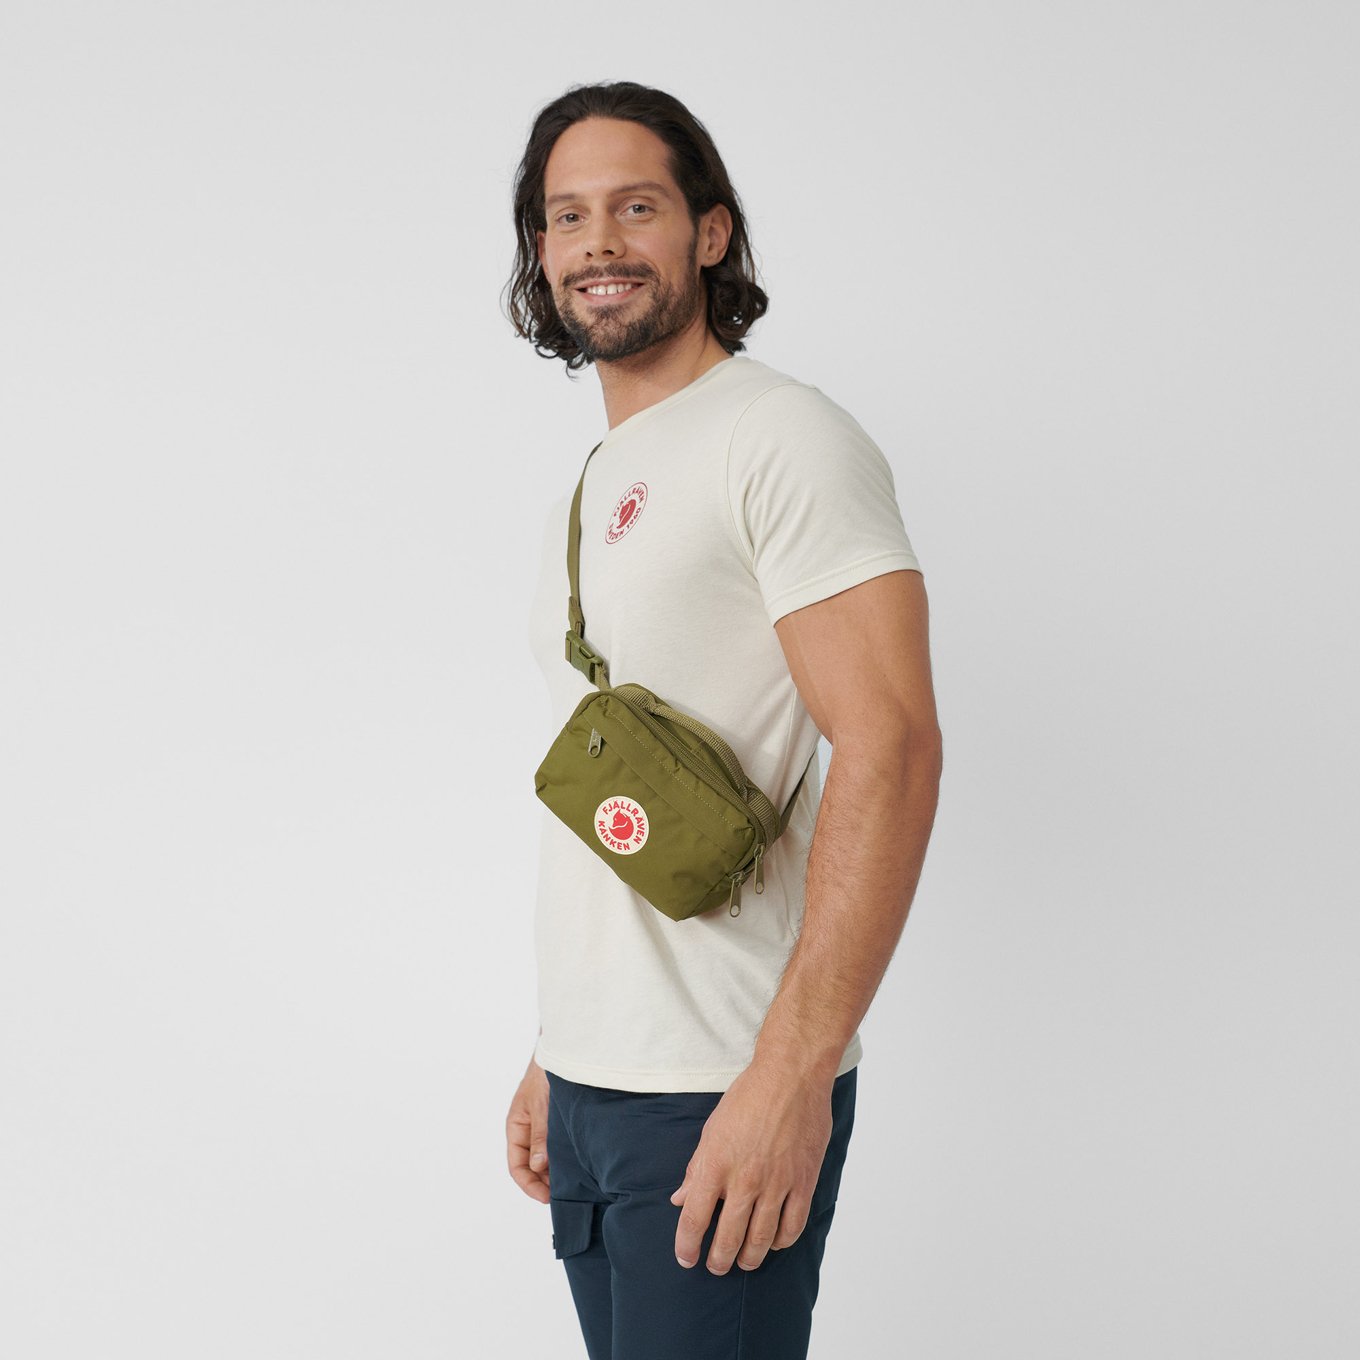 17 Inch Printed Hard Case Sling Bag For Kids - With Adjustable Shoulder  Strap